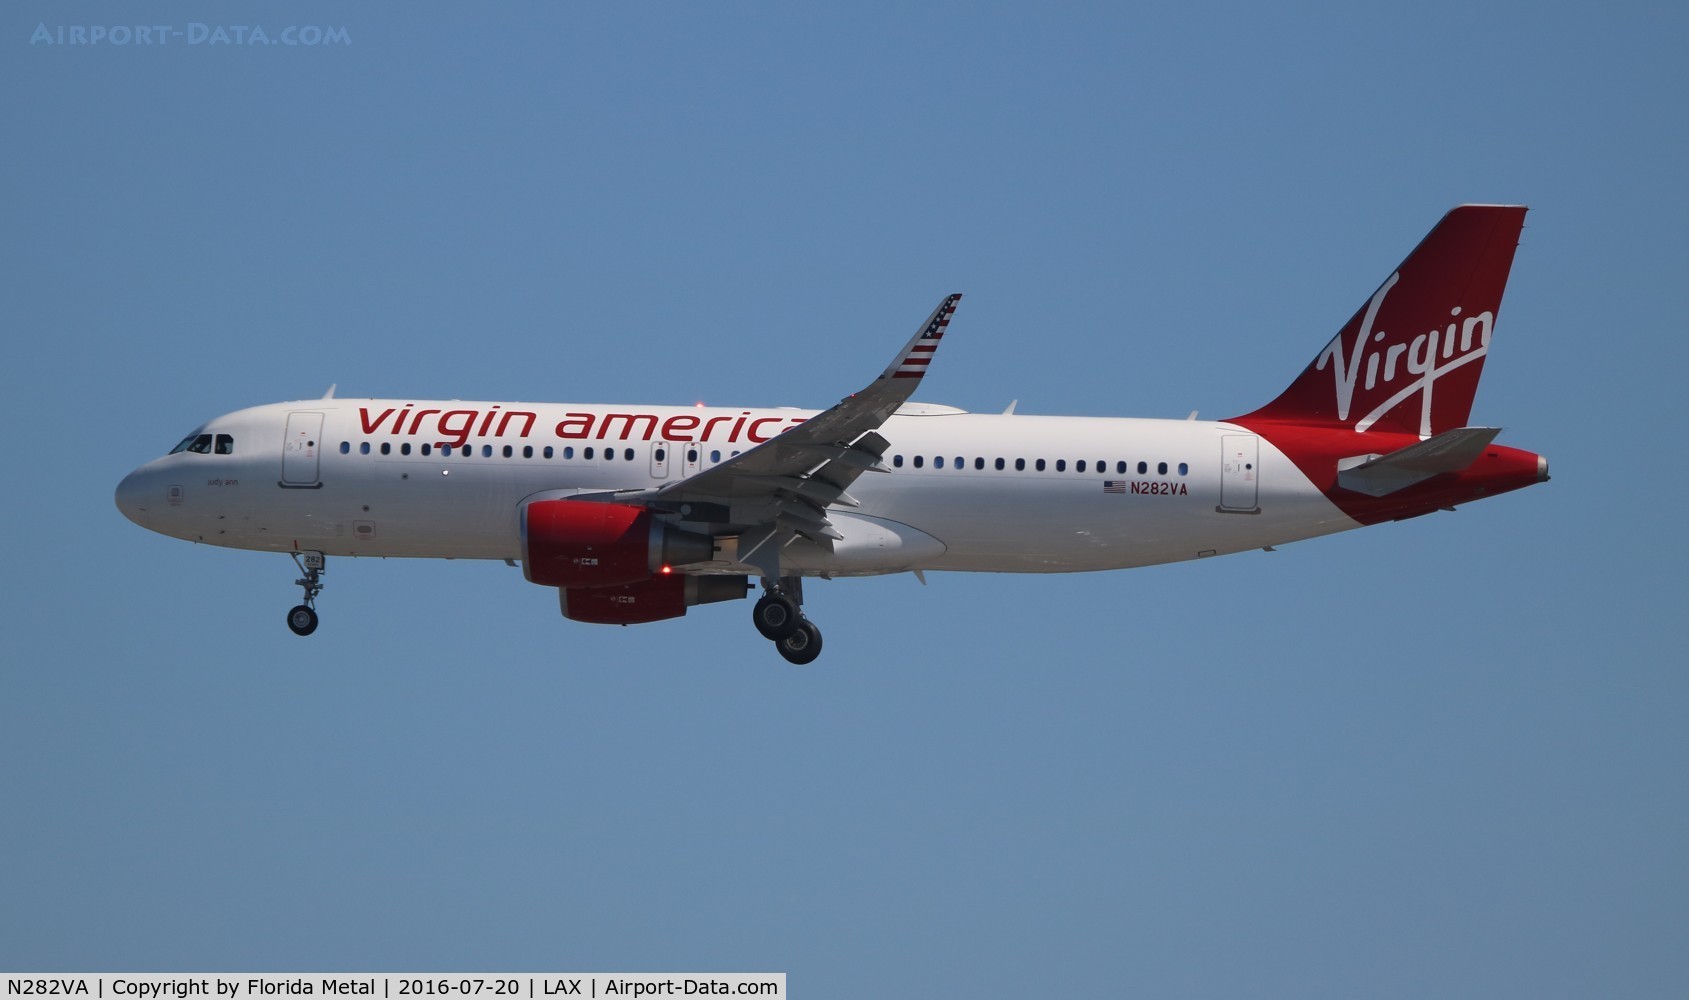 N282VA, 2015 Airbus A320-214 C/N 6704, Virgin America